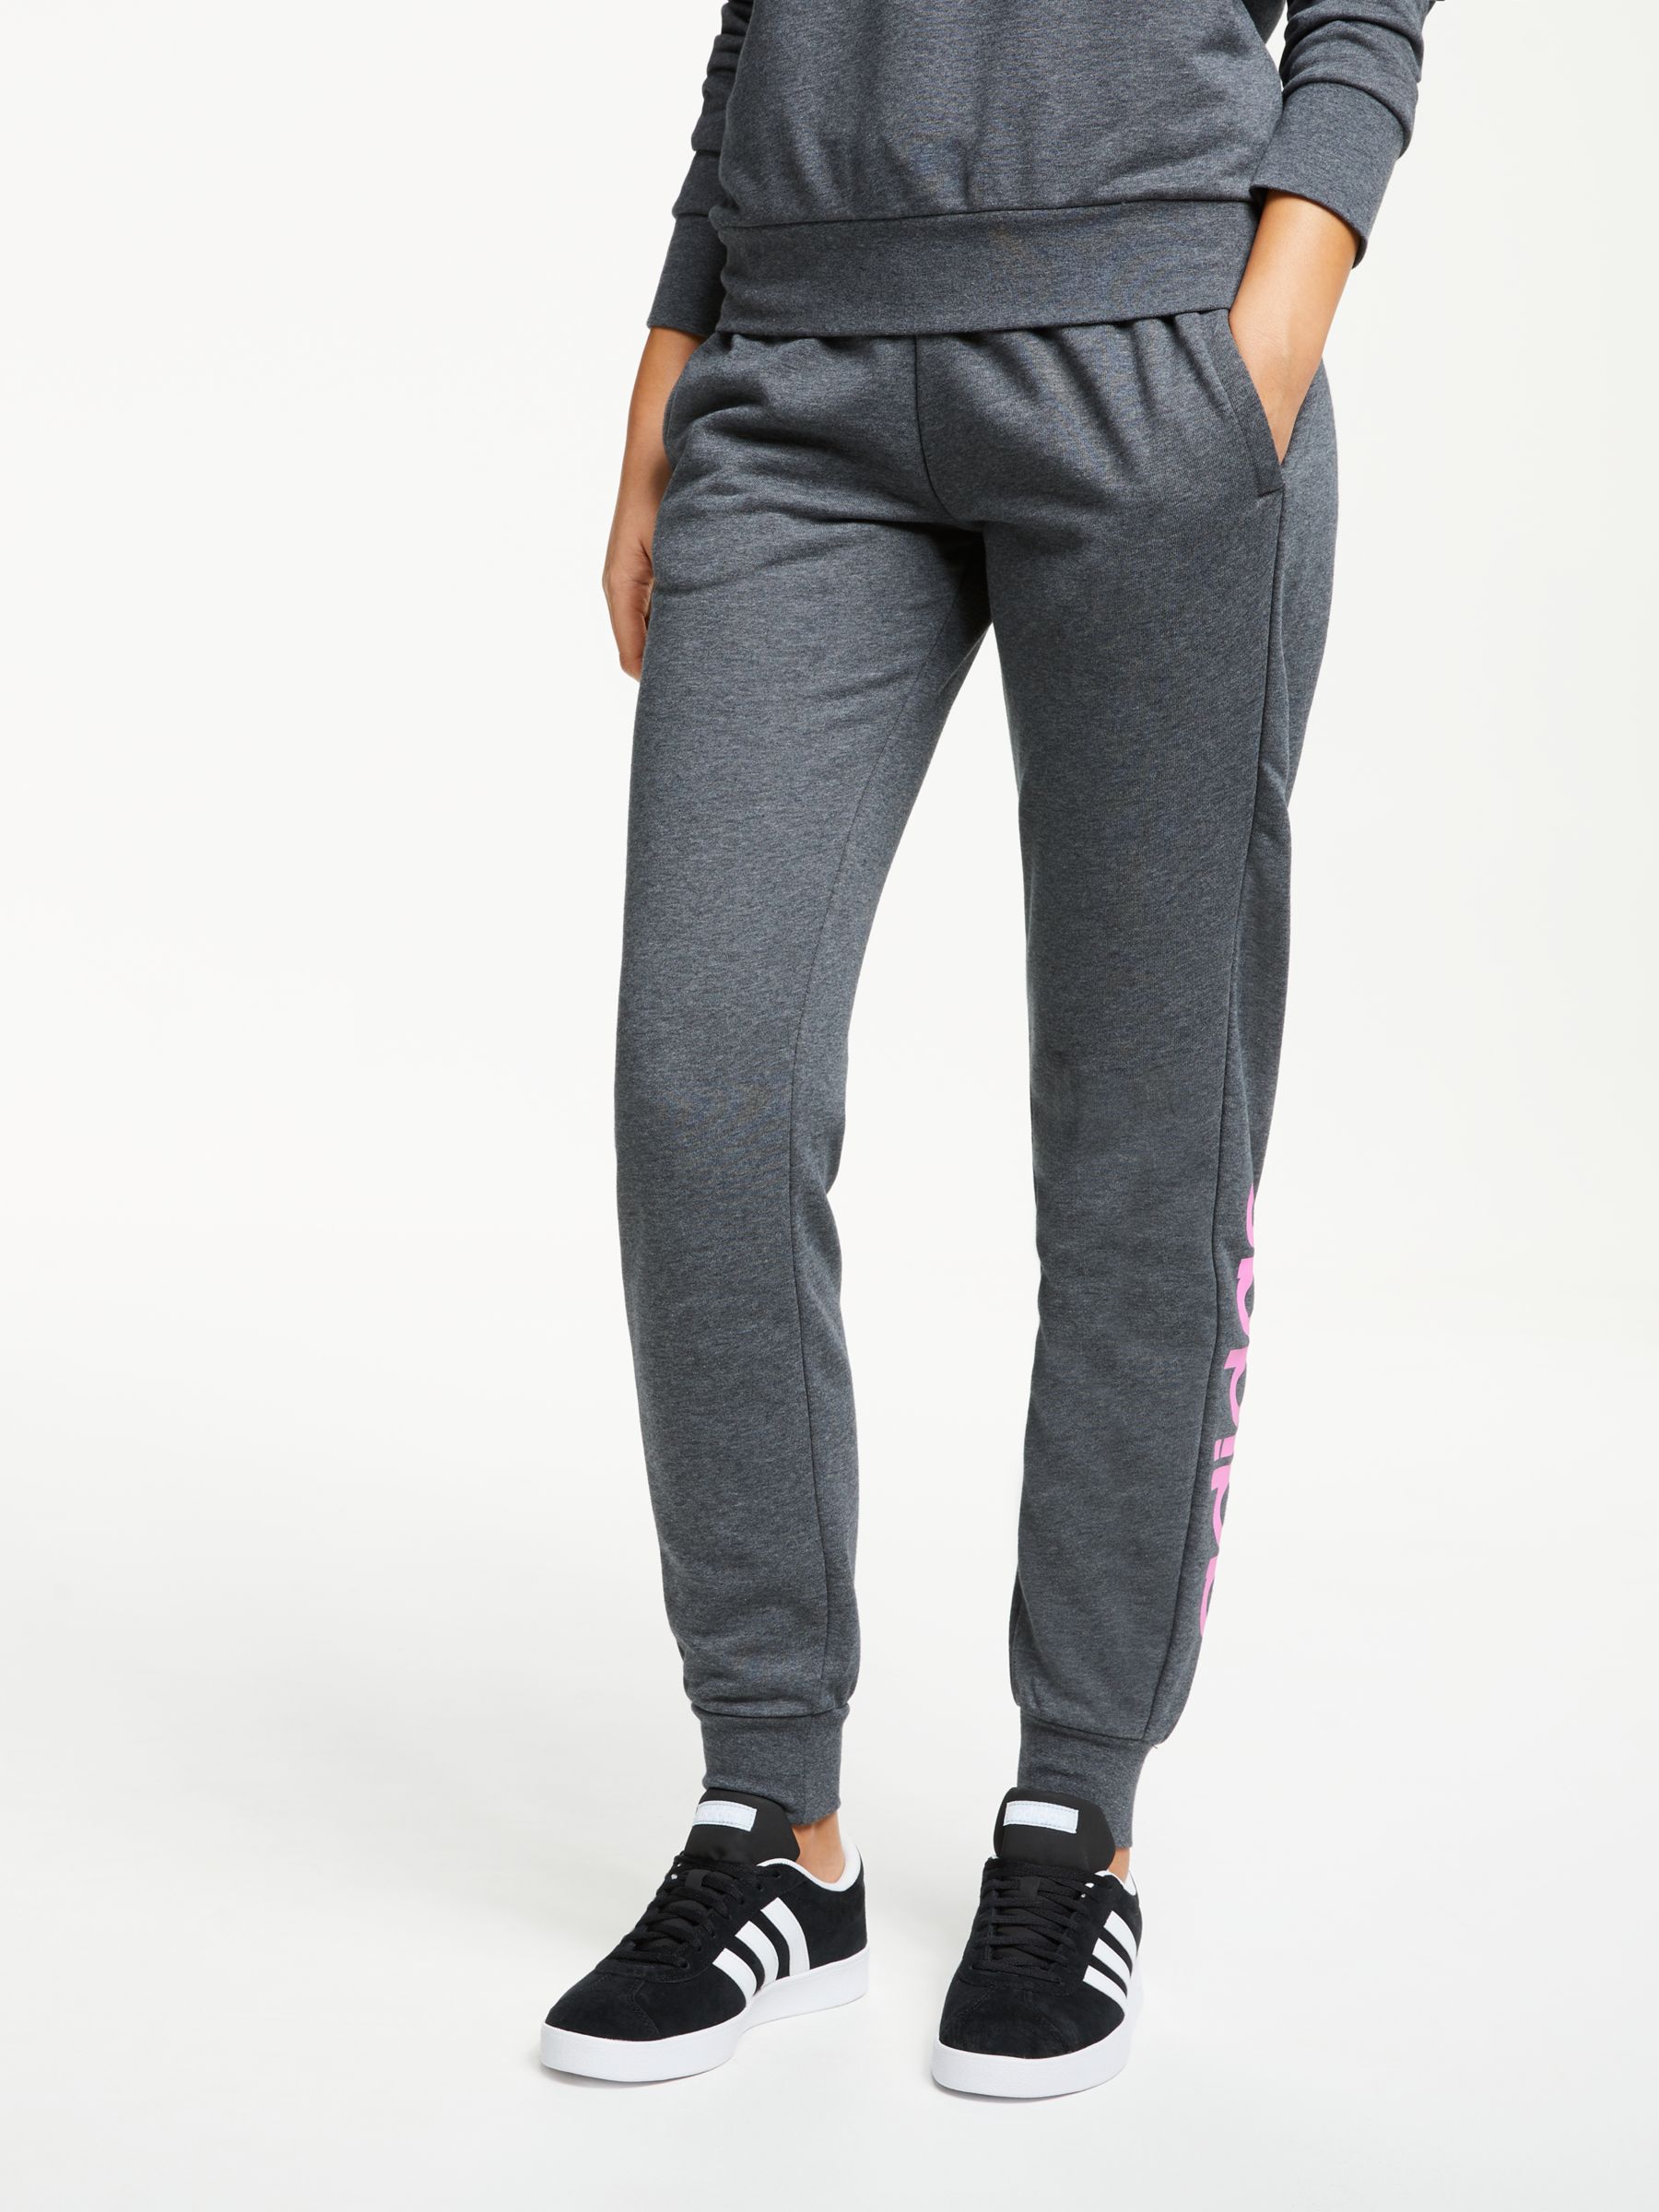 grey adidas jogging suit